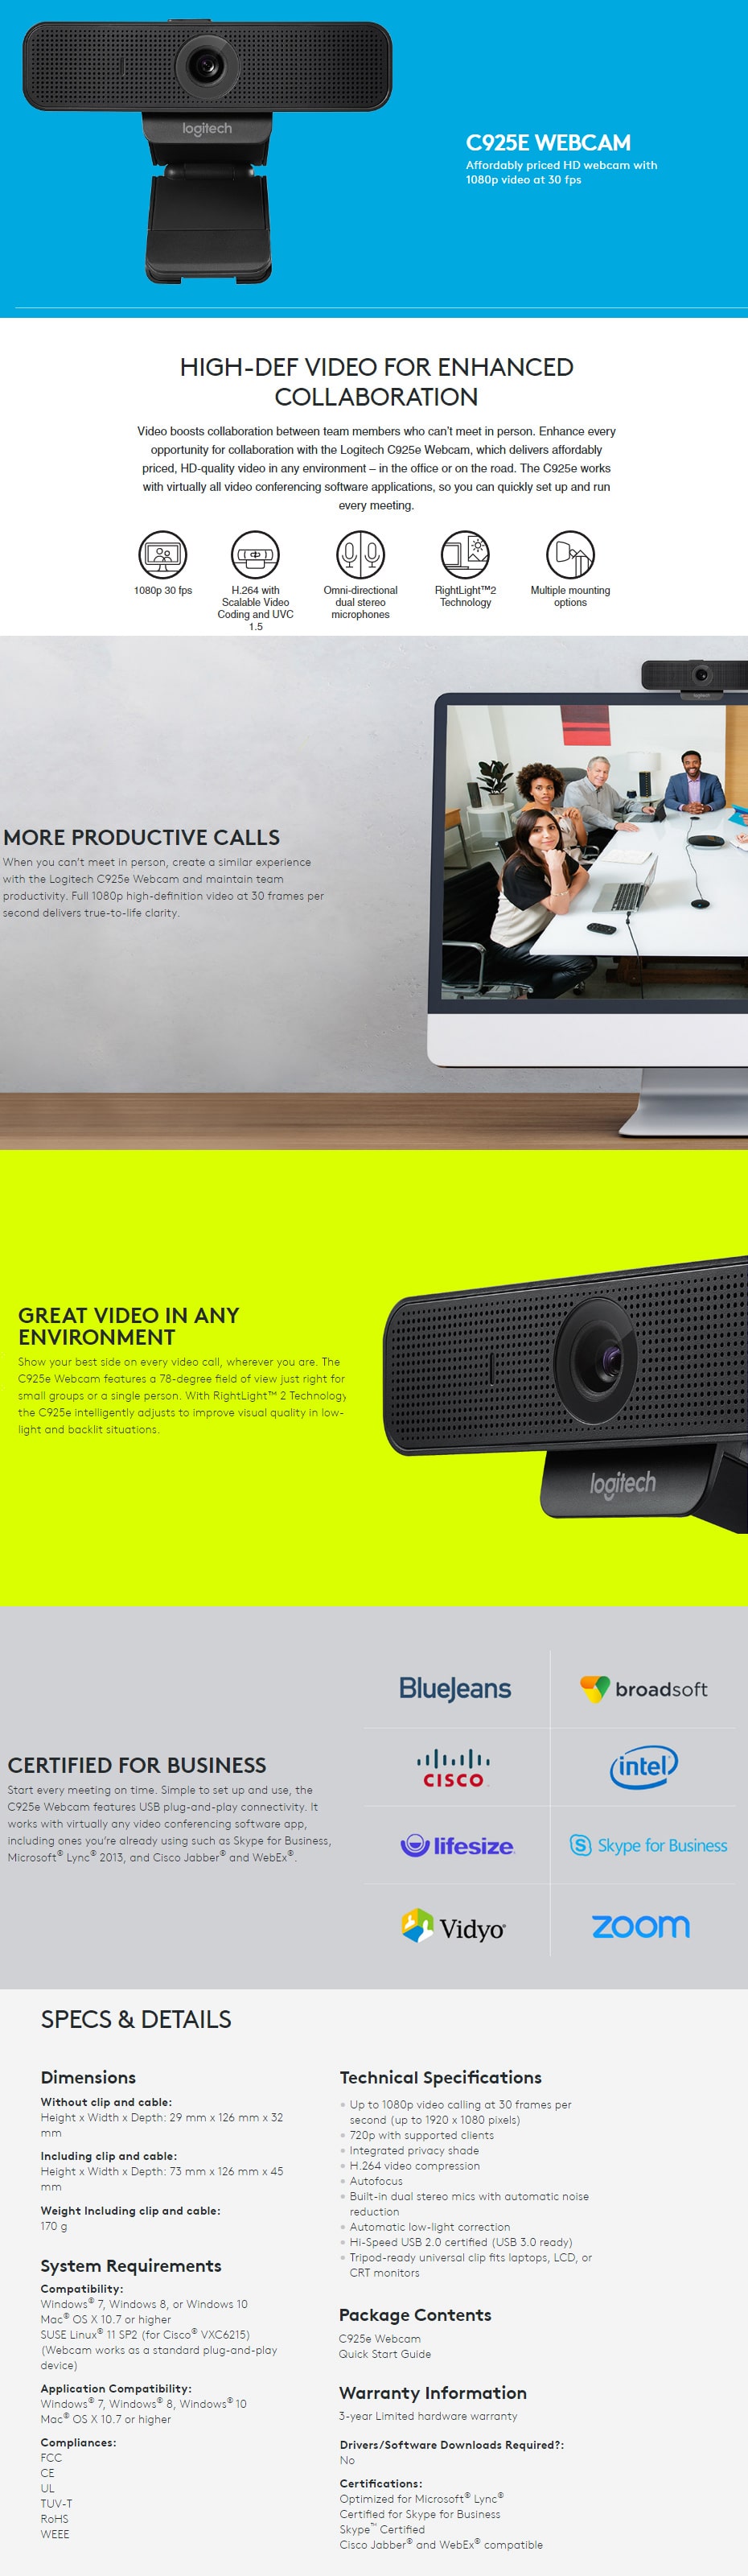 Logitech C925e Webcam features